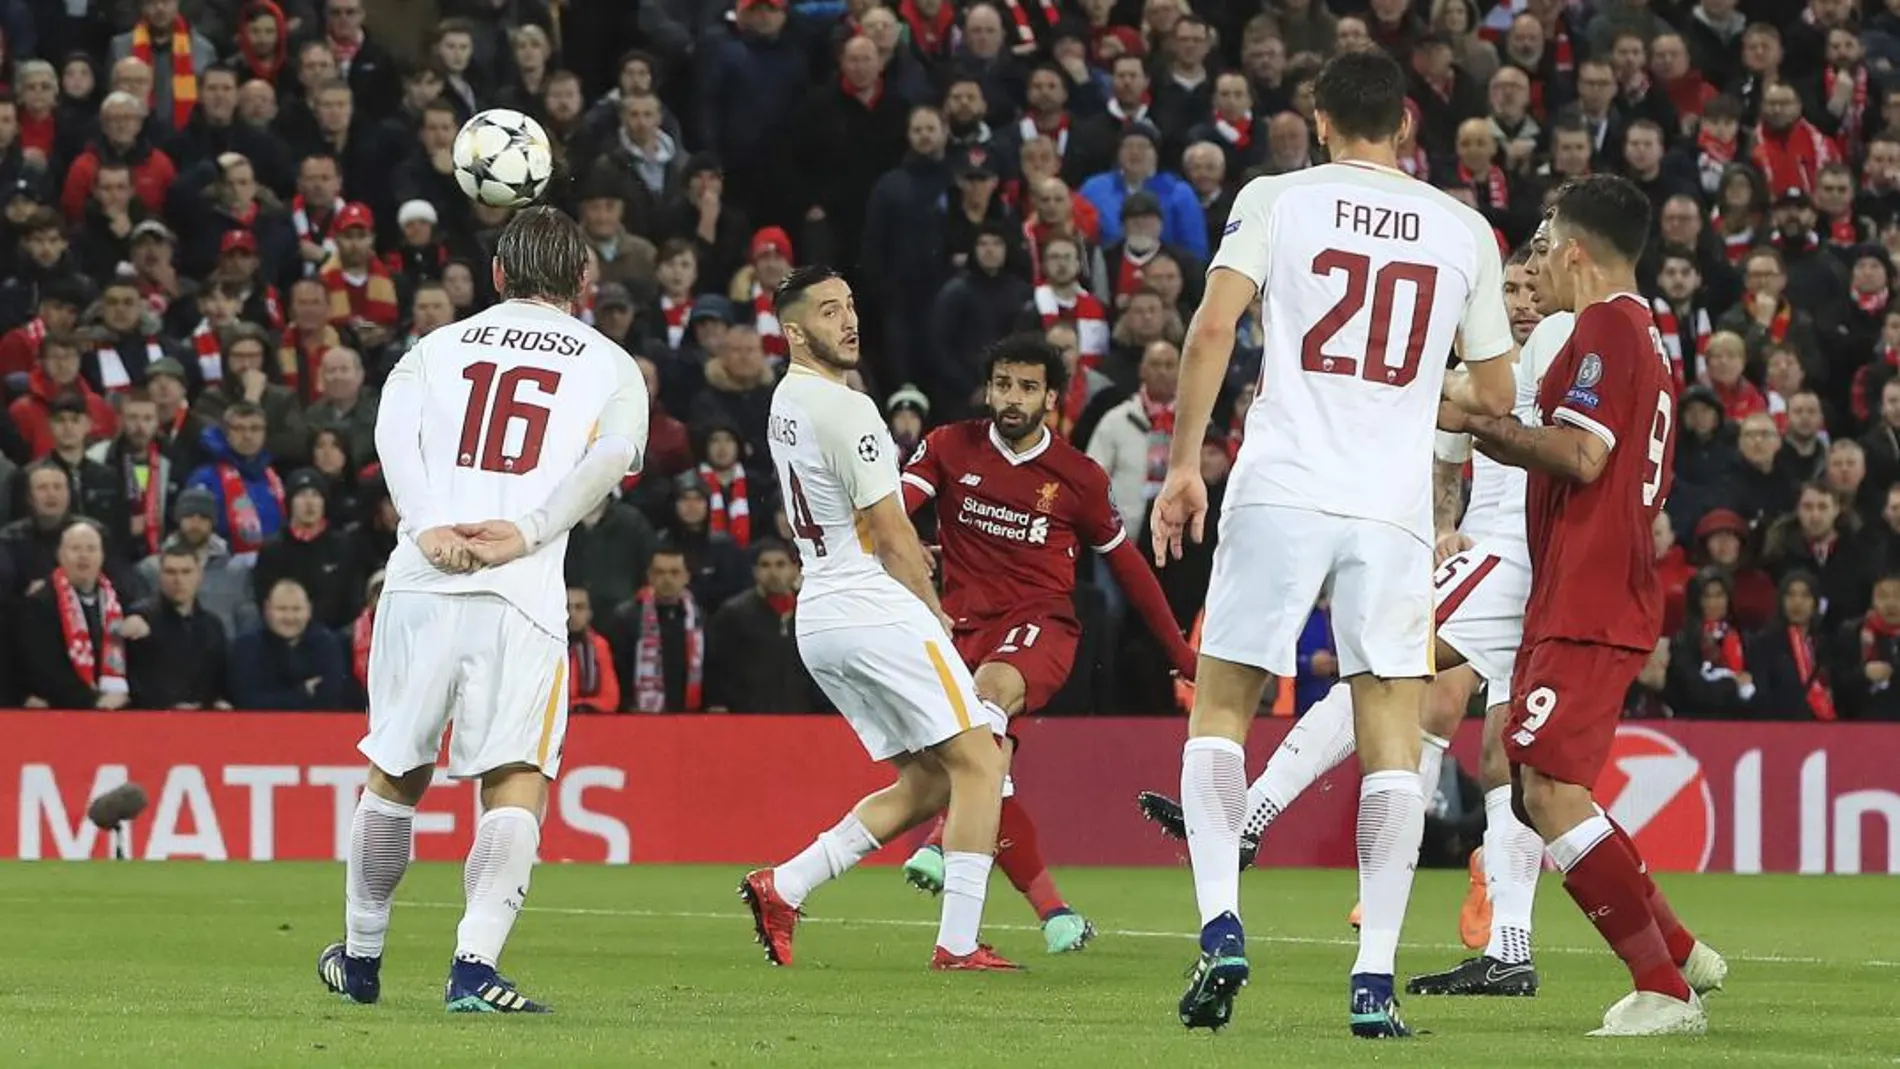 Momento del partido entre el Liverpool y Roma / Ap